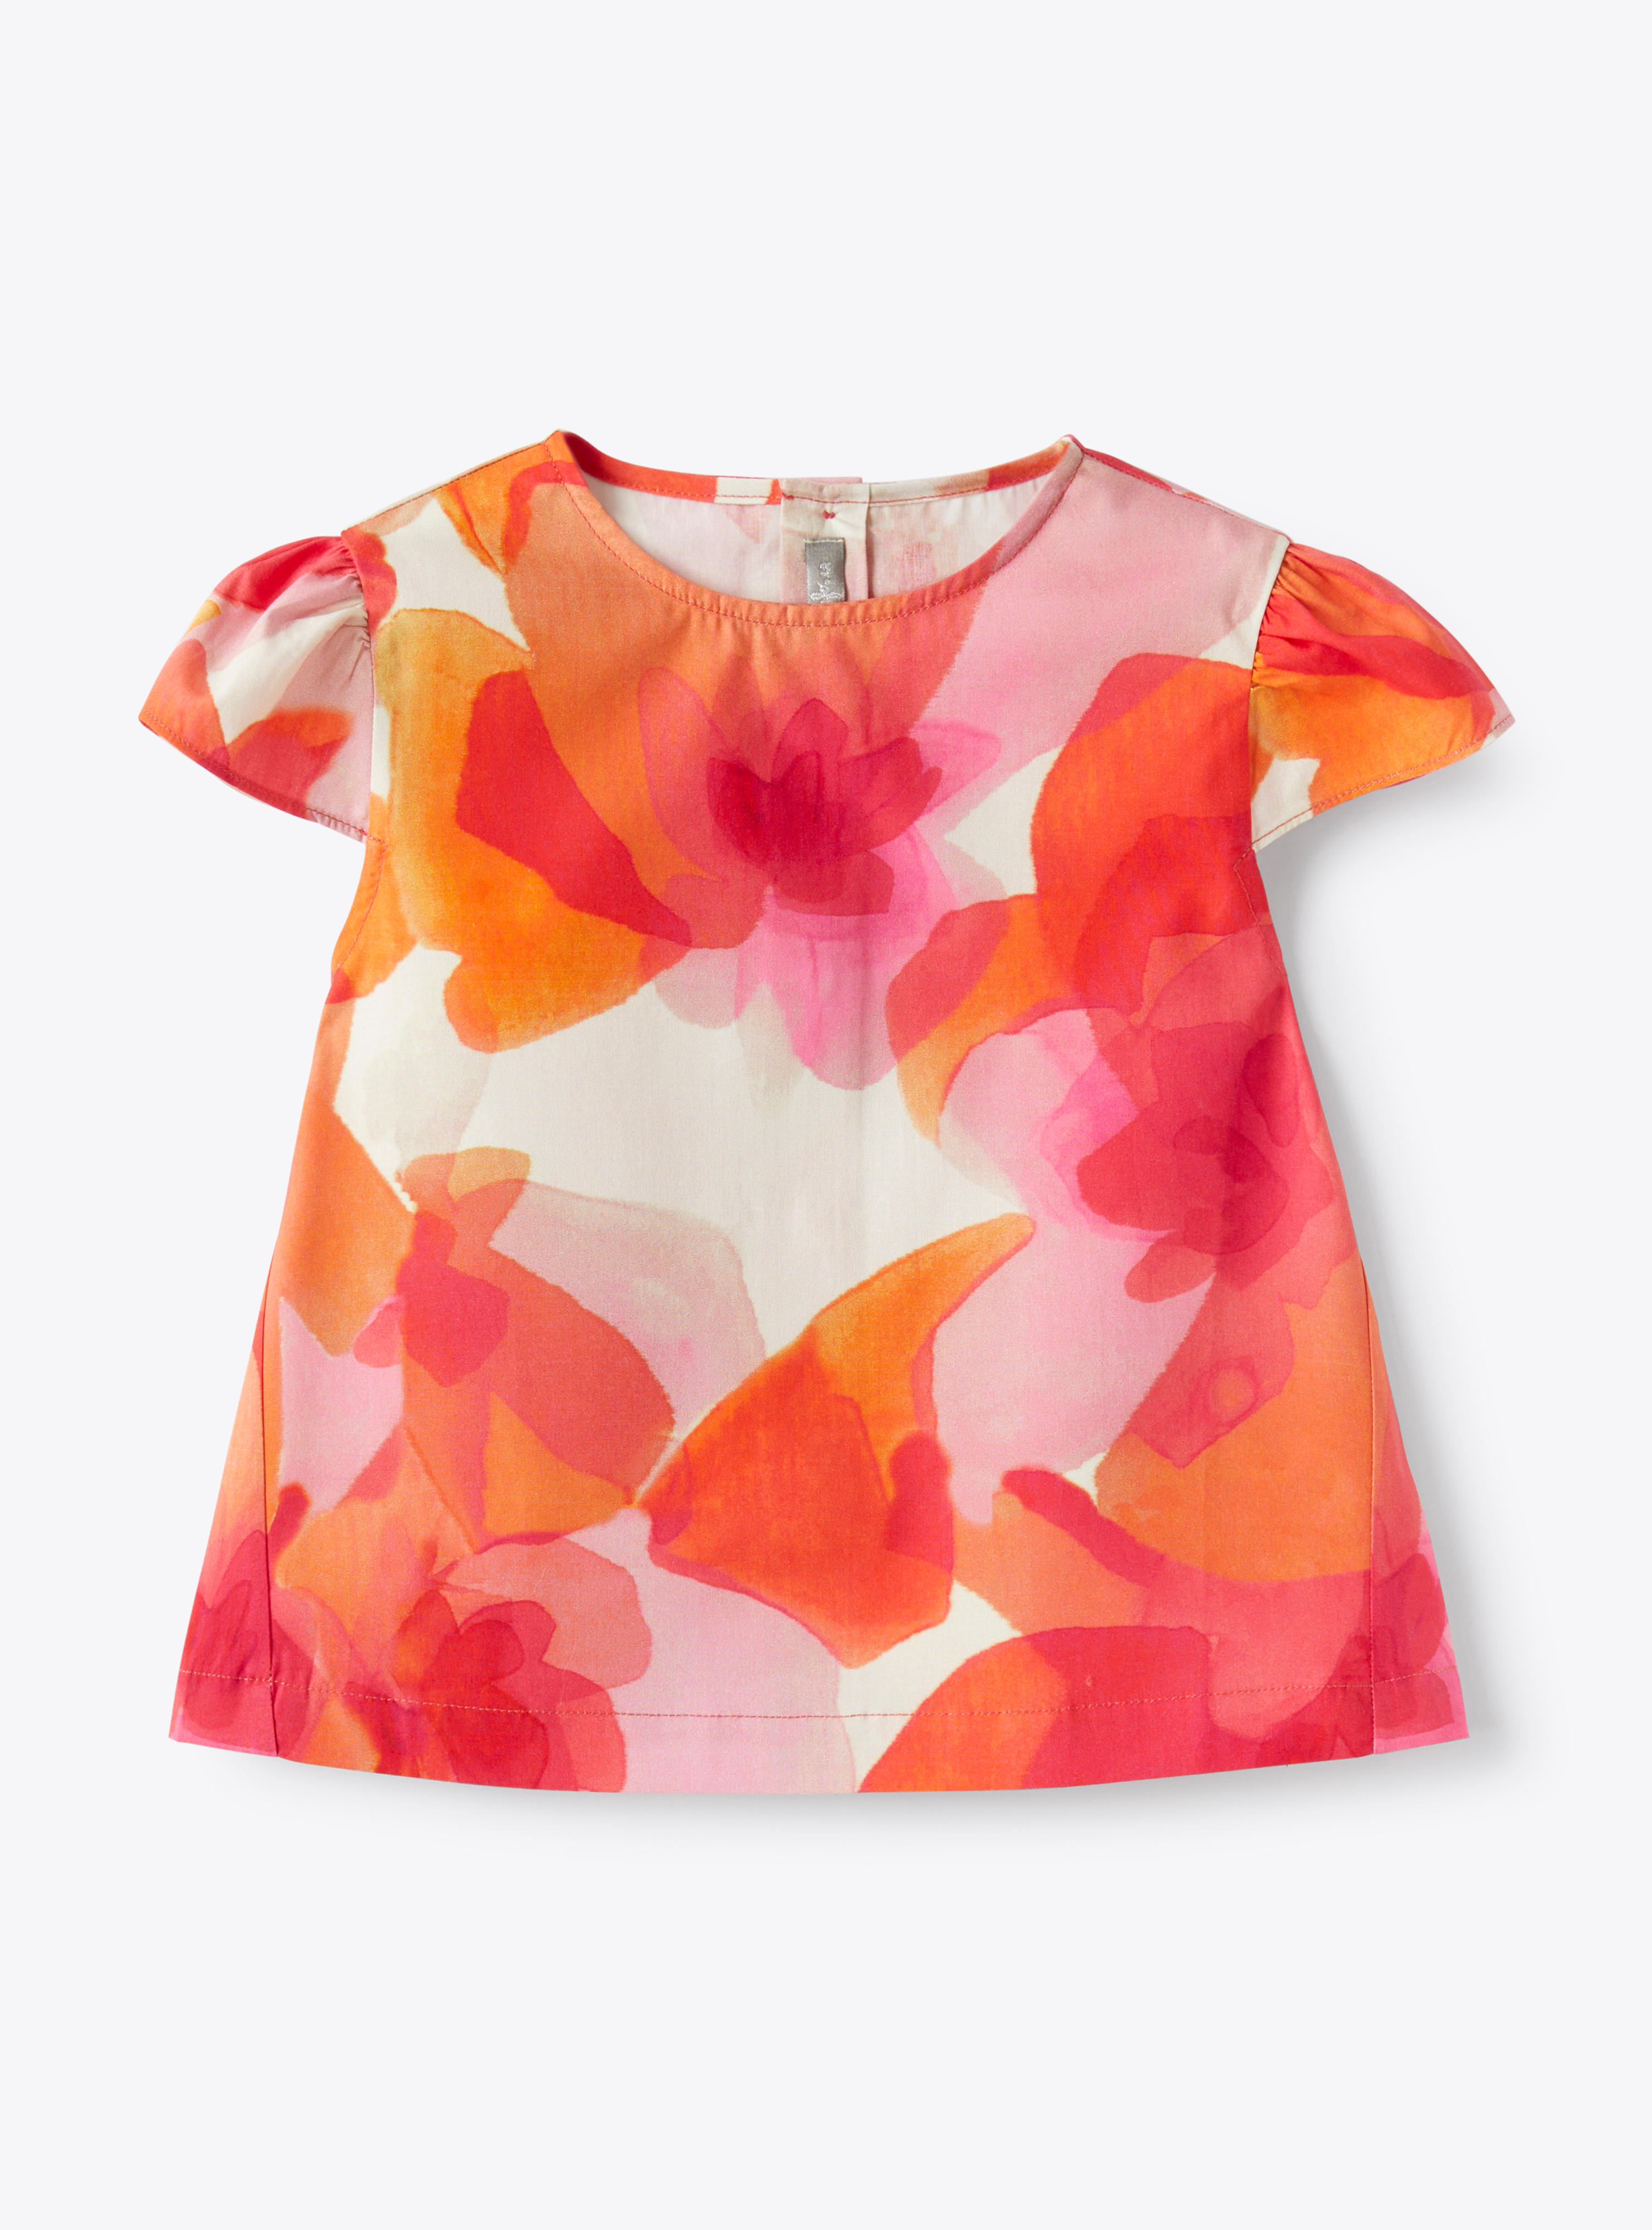 Хлопковая рубашка с эксклюзивным цветочным принтом - фуксия | Il Gufo